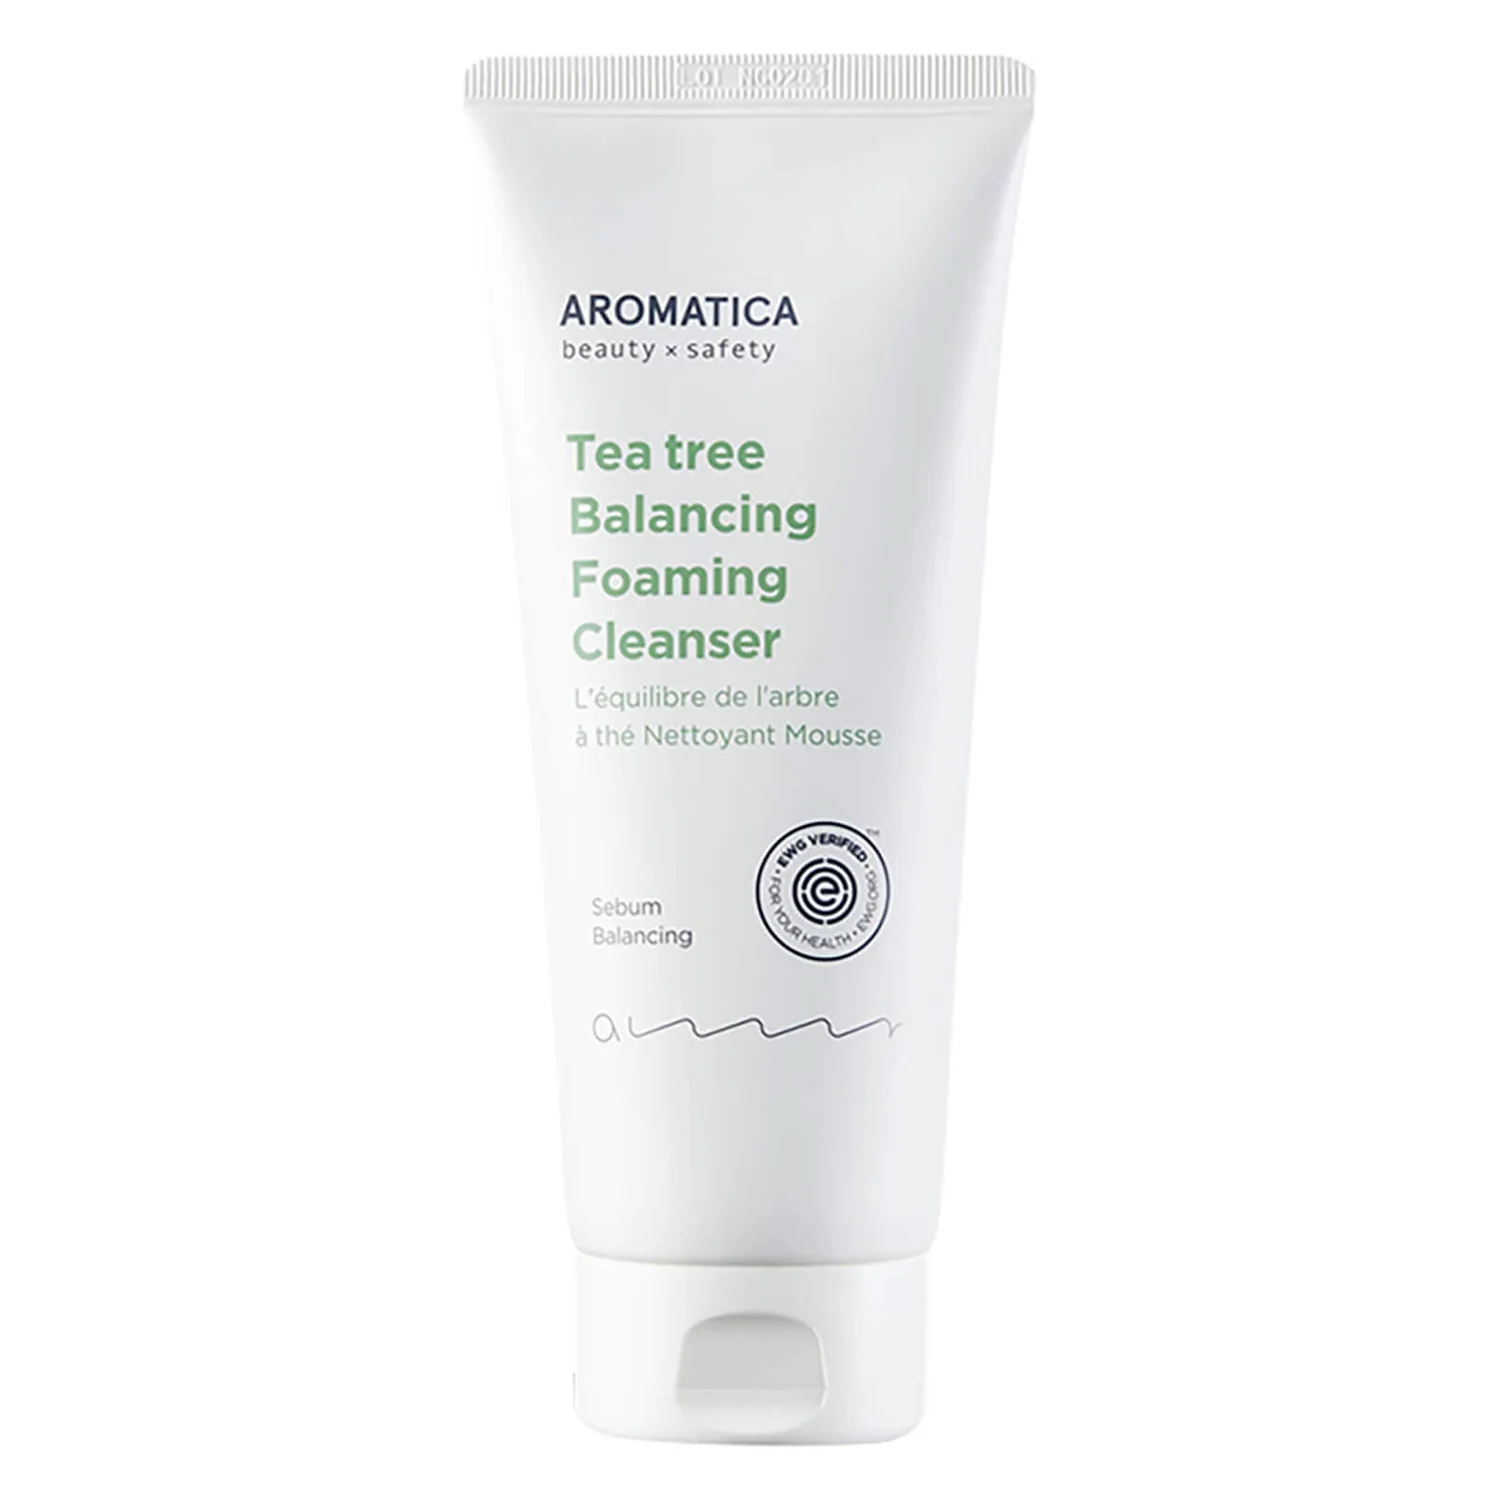 Aromatic best Korean cleanser for acne-prone skin